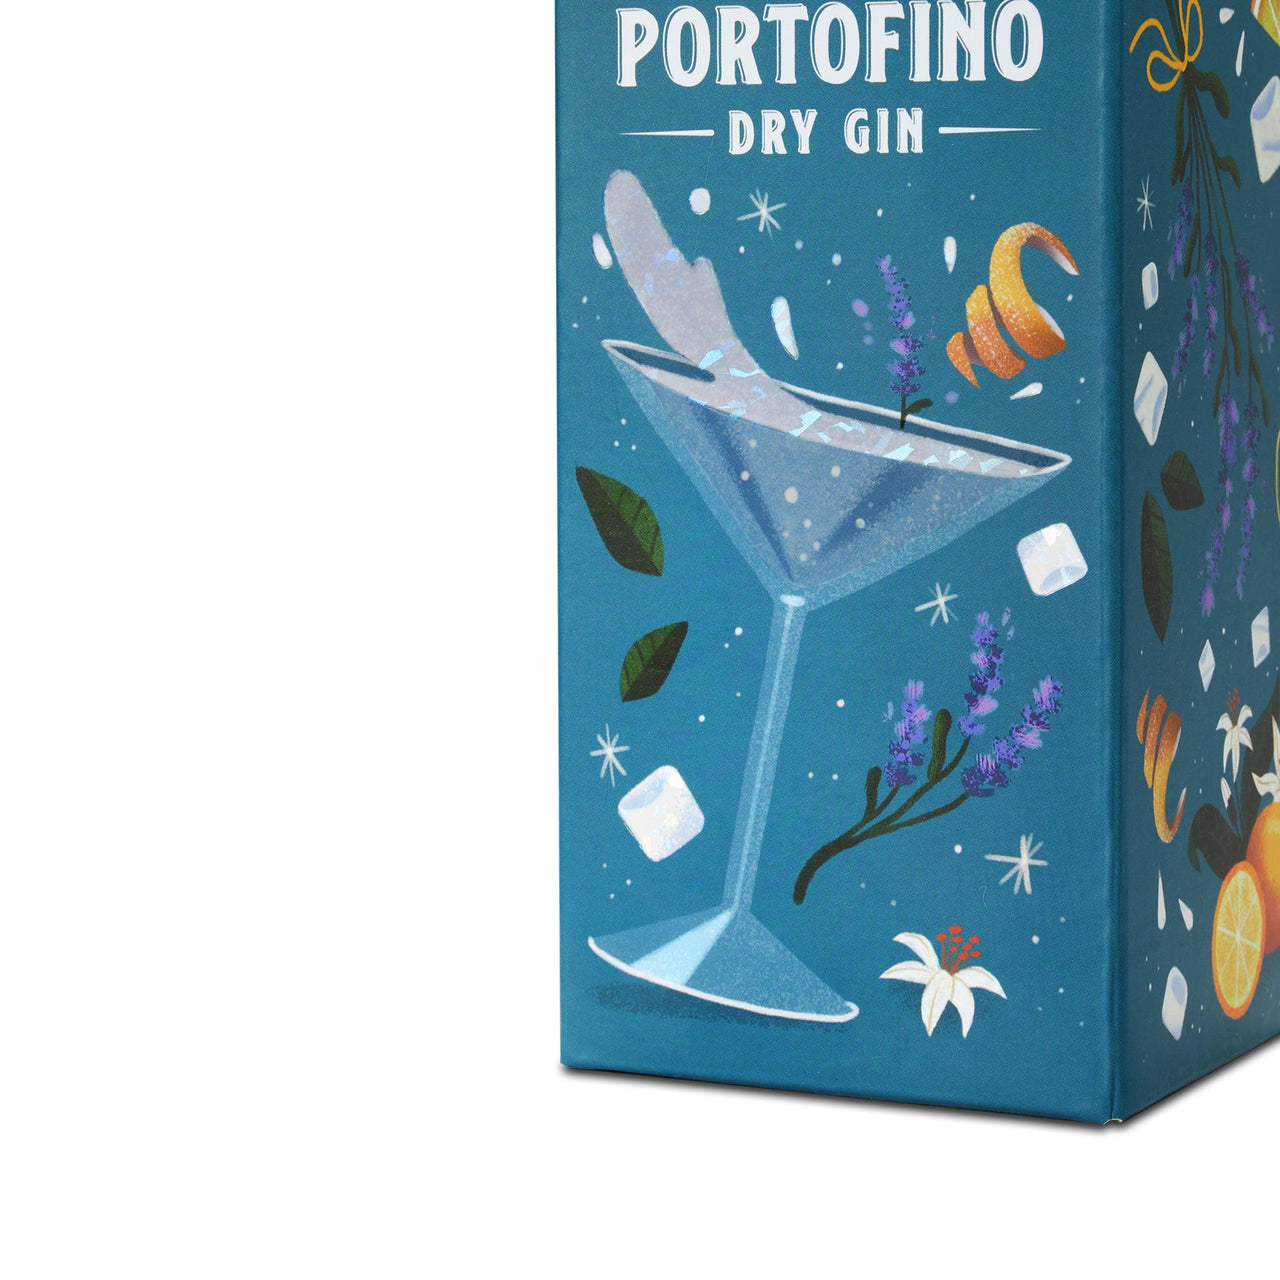 PORTOFINO DRY GIN 500 ml COCKTAIL EDIZIONE LIMITATA - Portofino Dry Gin